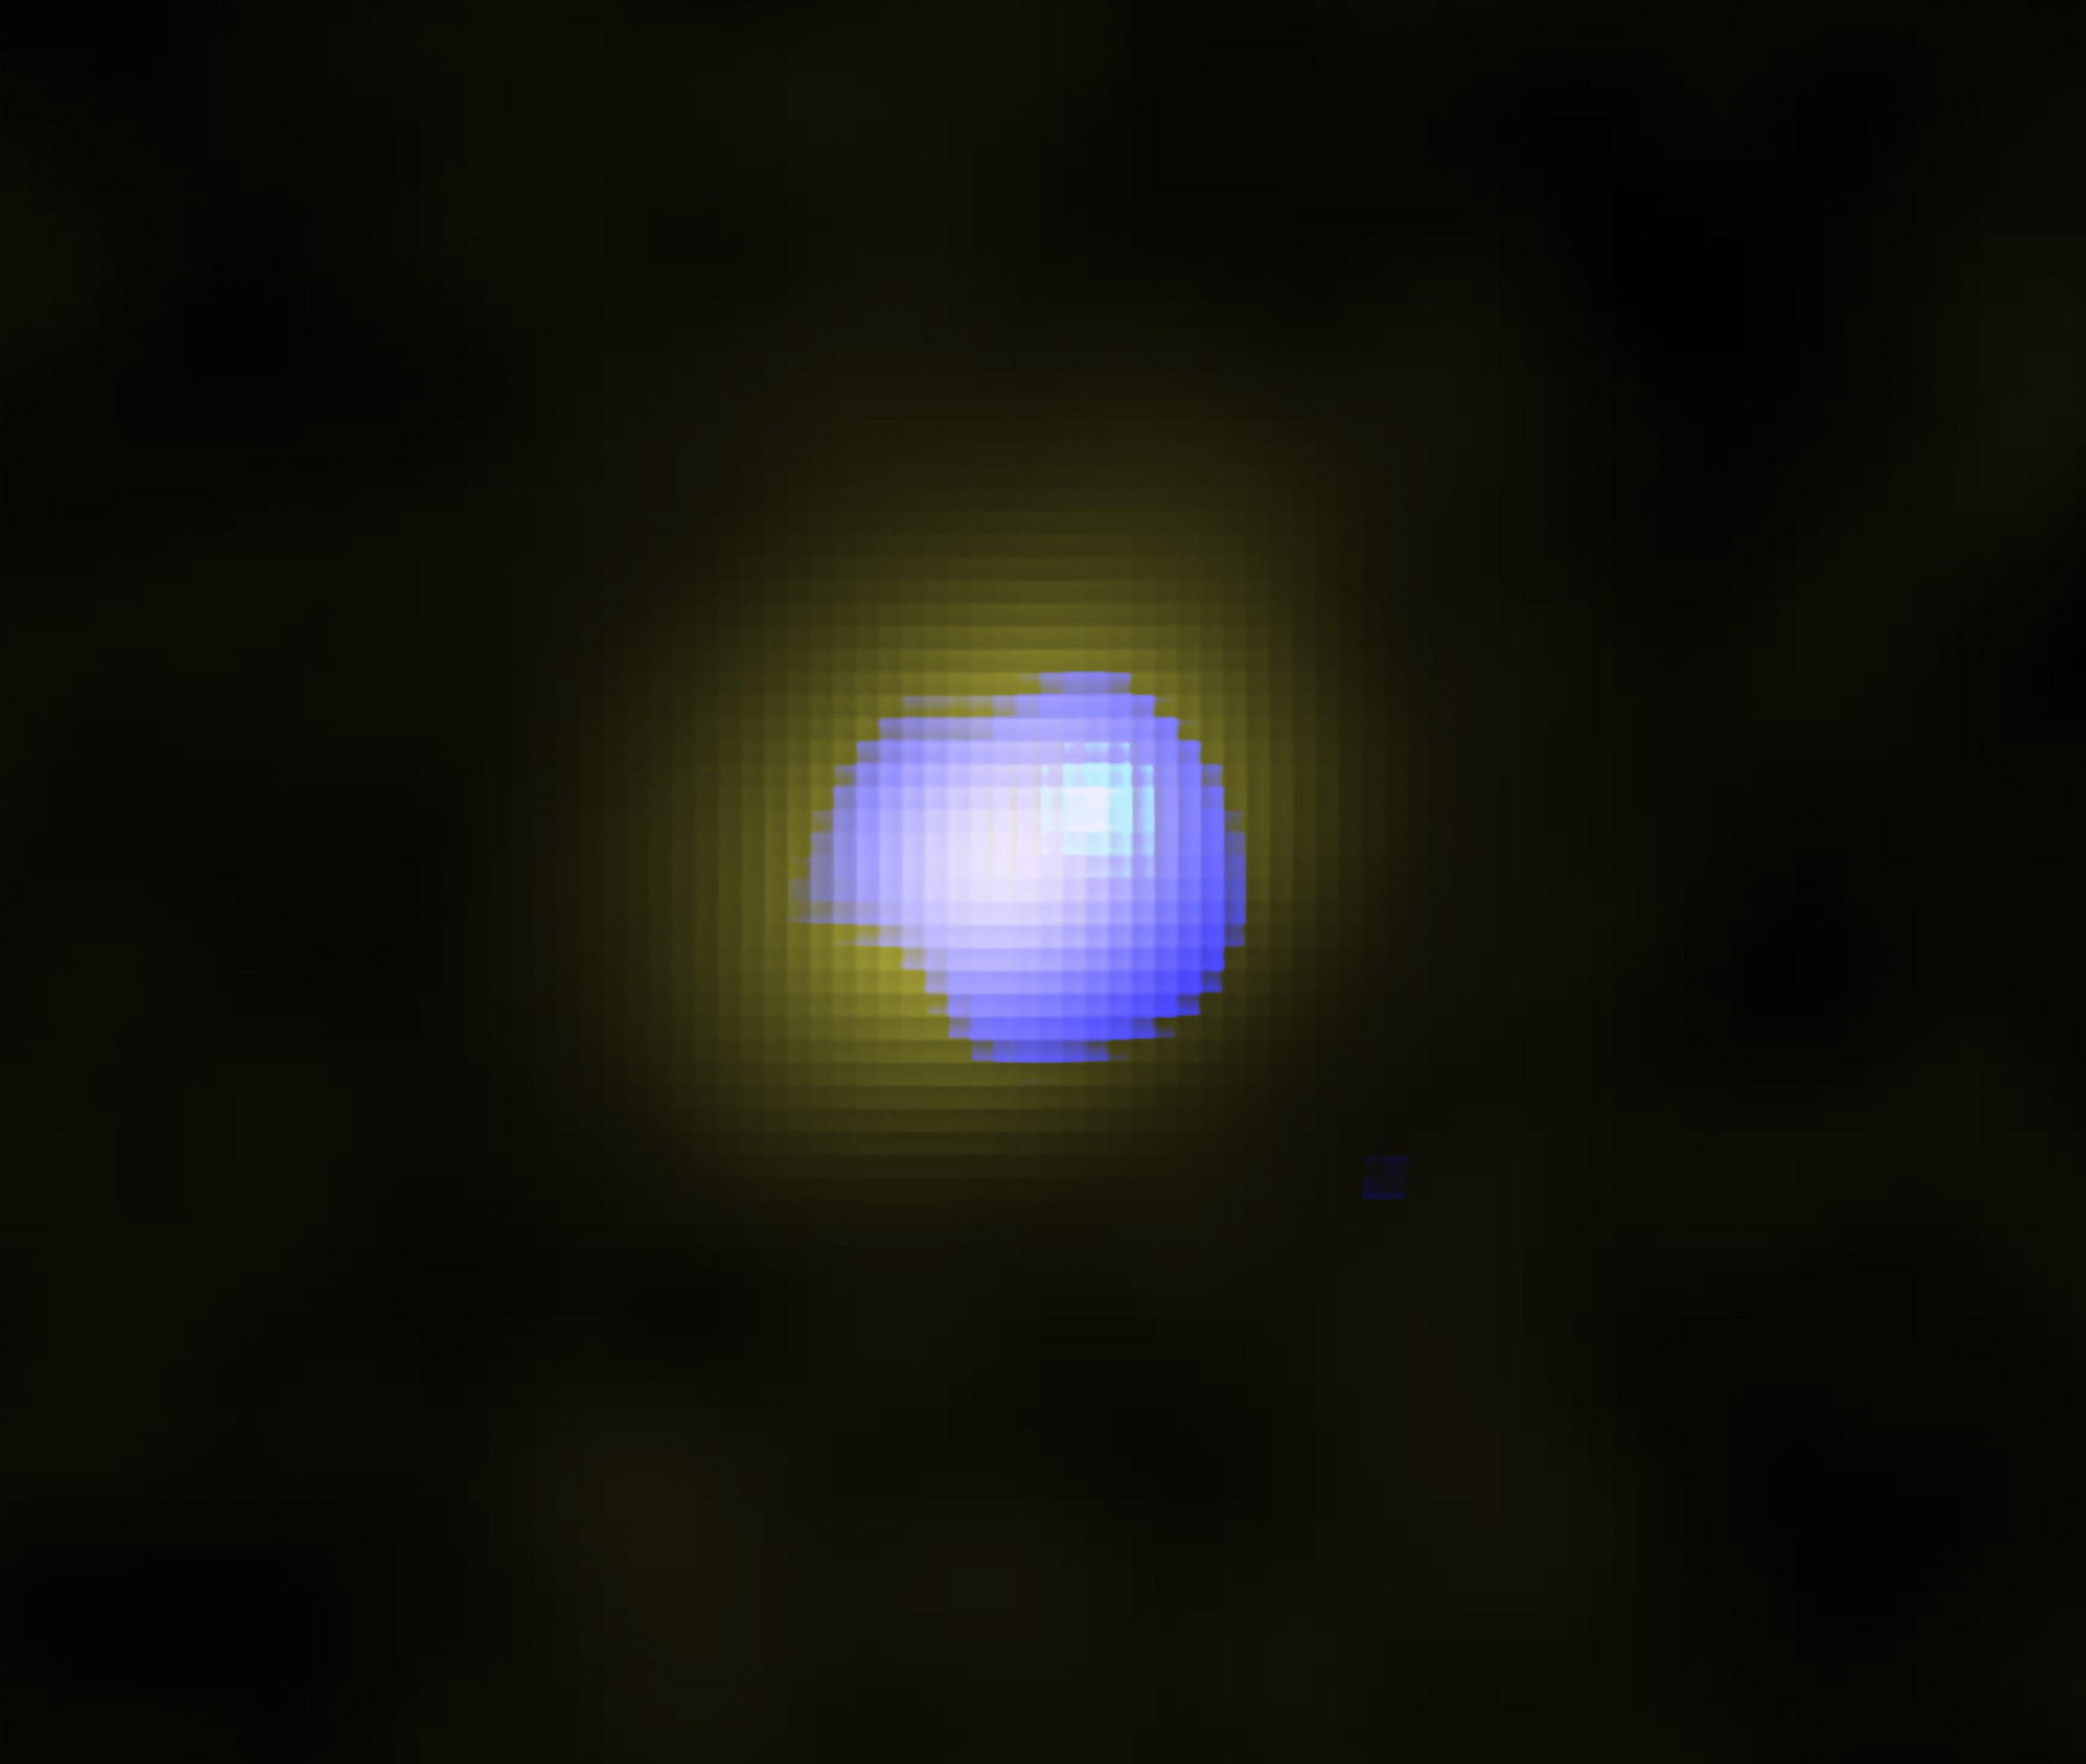 Imagem da galáxia J1243+0100 captada pelo radiotelescópio Alma  (Foto: ALMA (ESO/NAOJ/NRAO), Izumi et al)